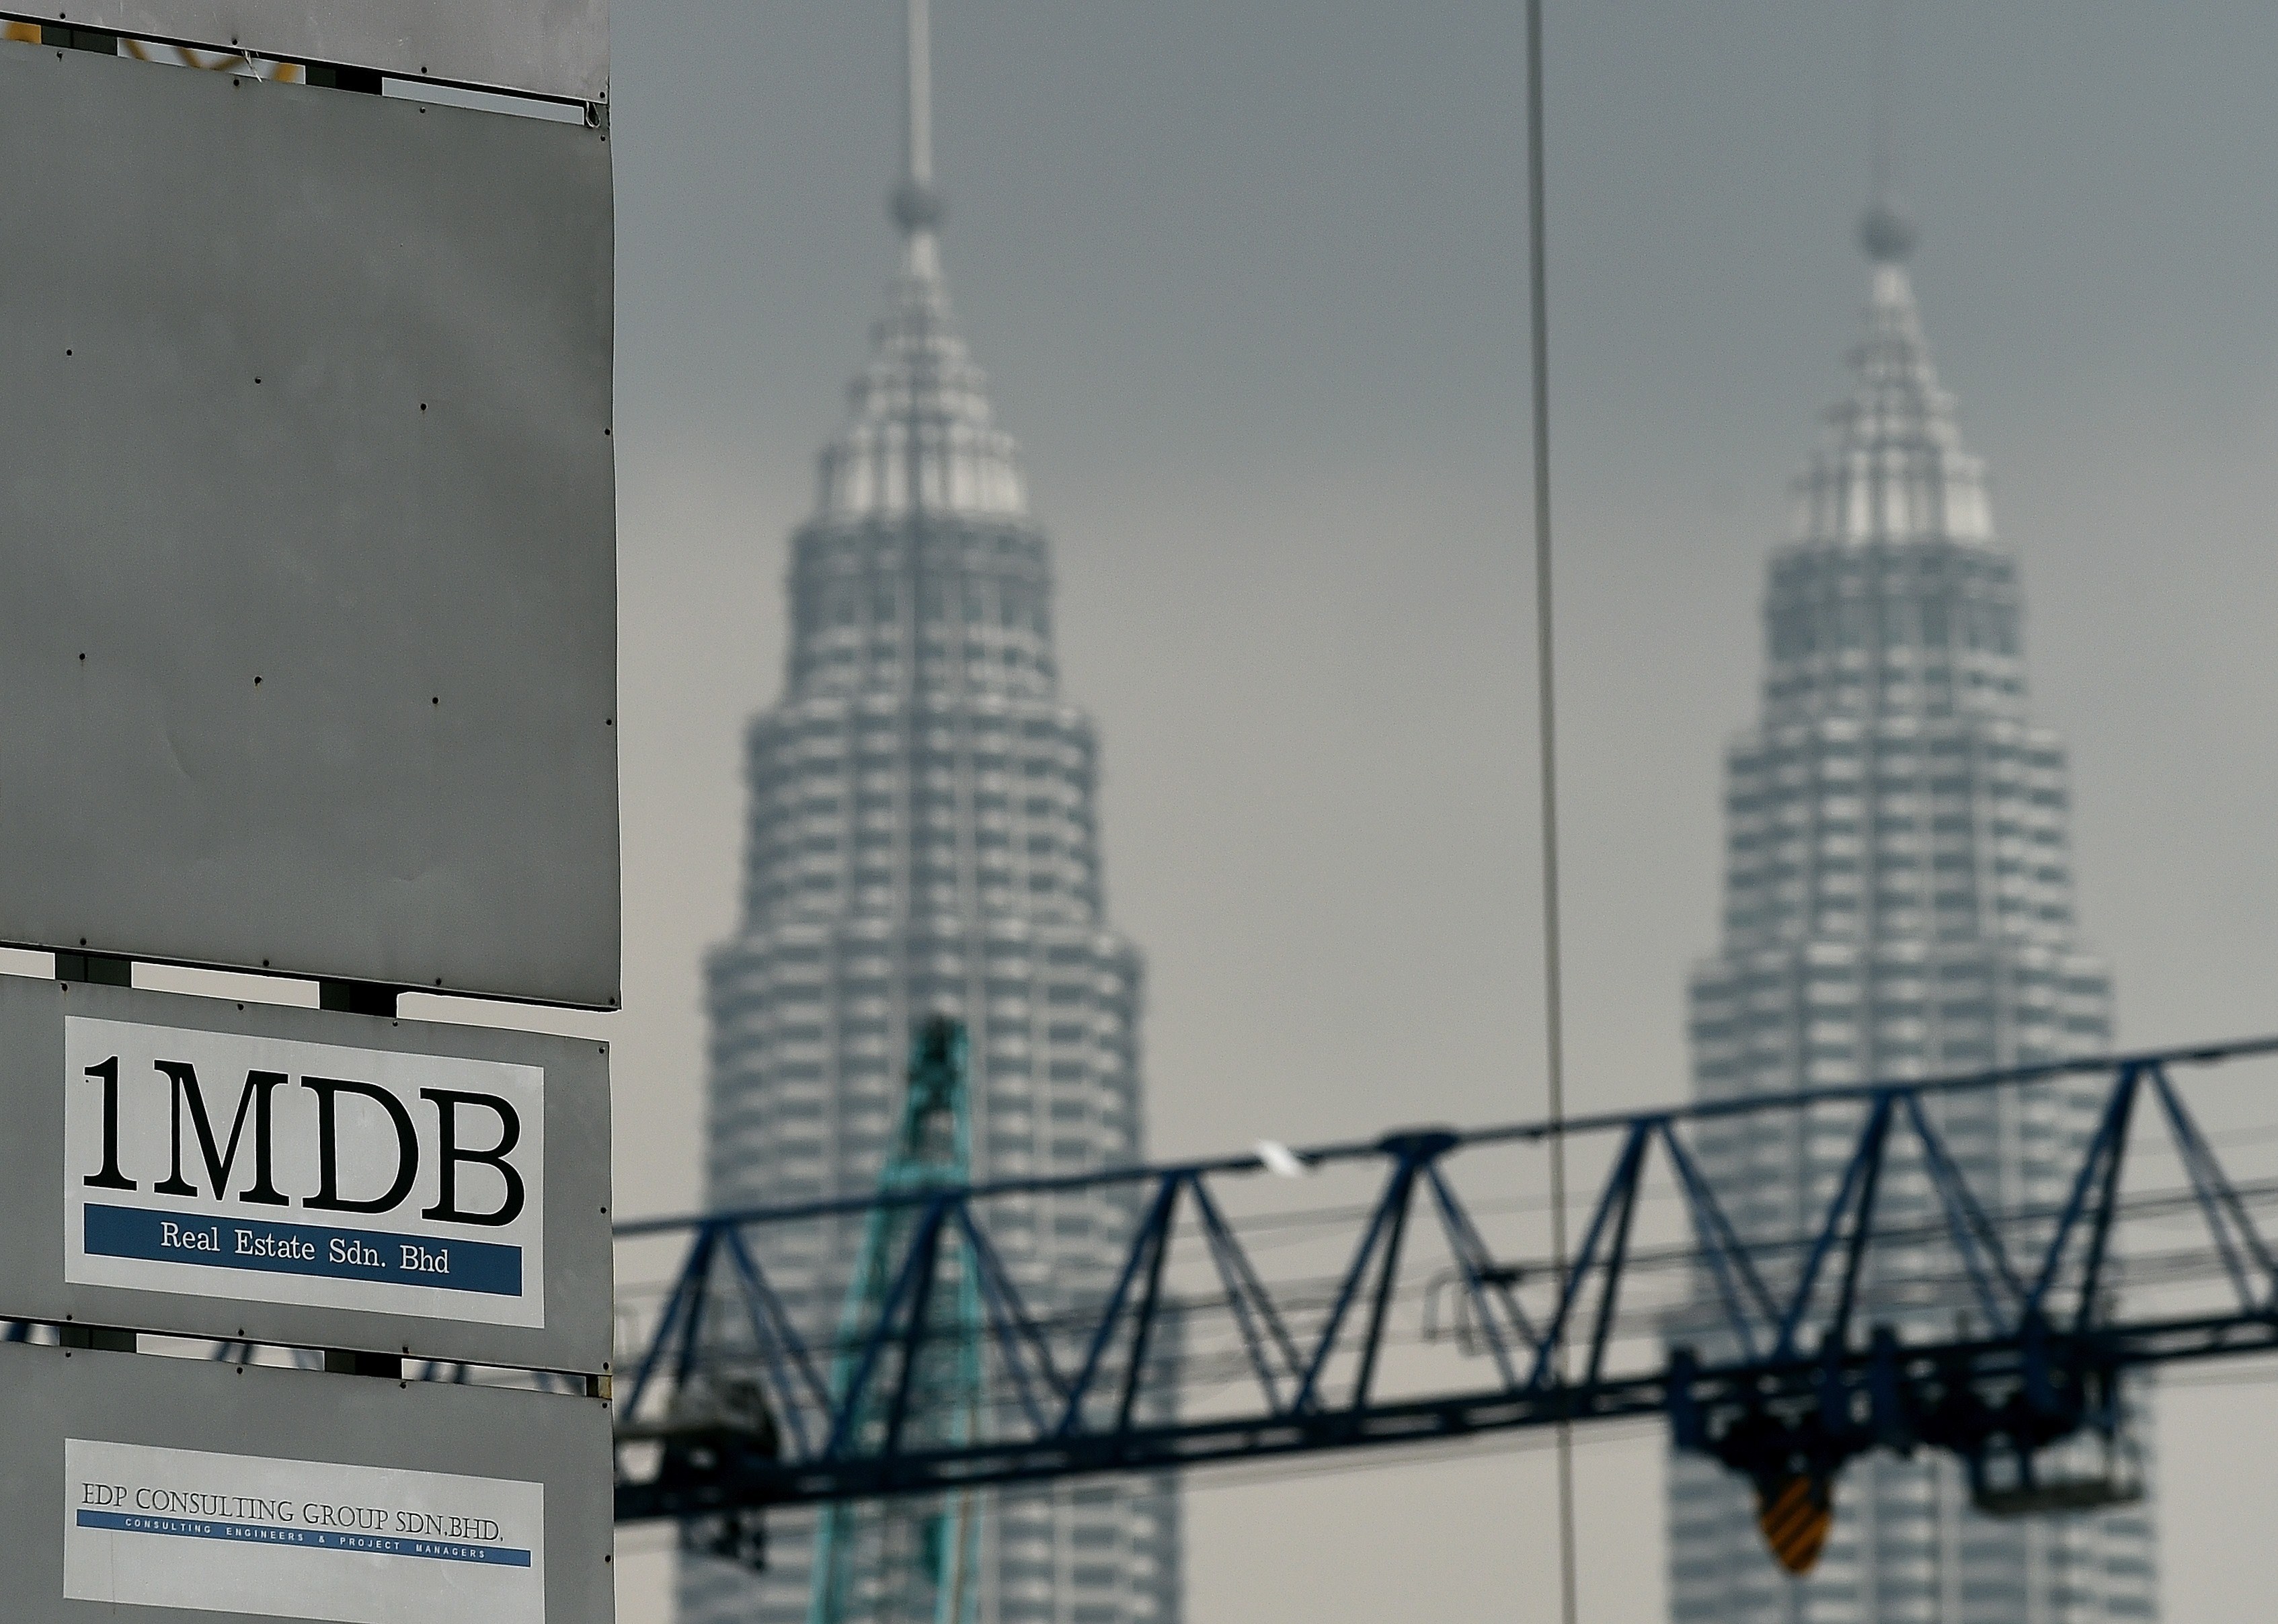 The 1MDB logo is seen on a billboard in Kuala Lumpur on July 3, 2015 (Manan Vatsyayana—AFP/Getty Images)